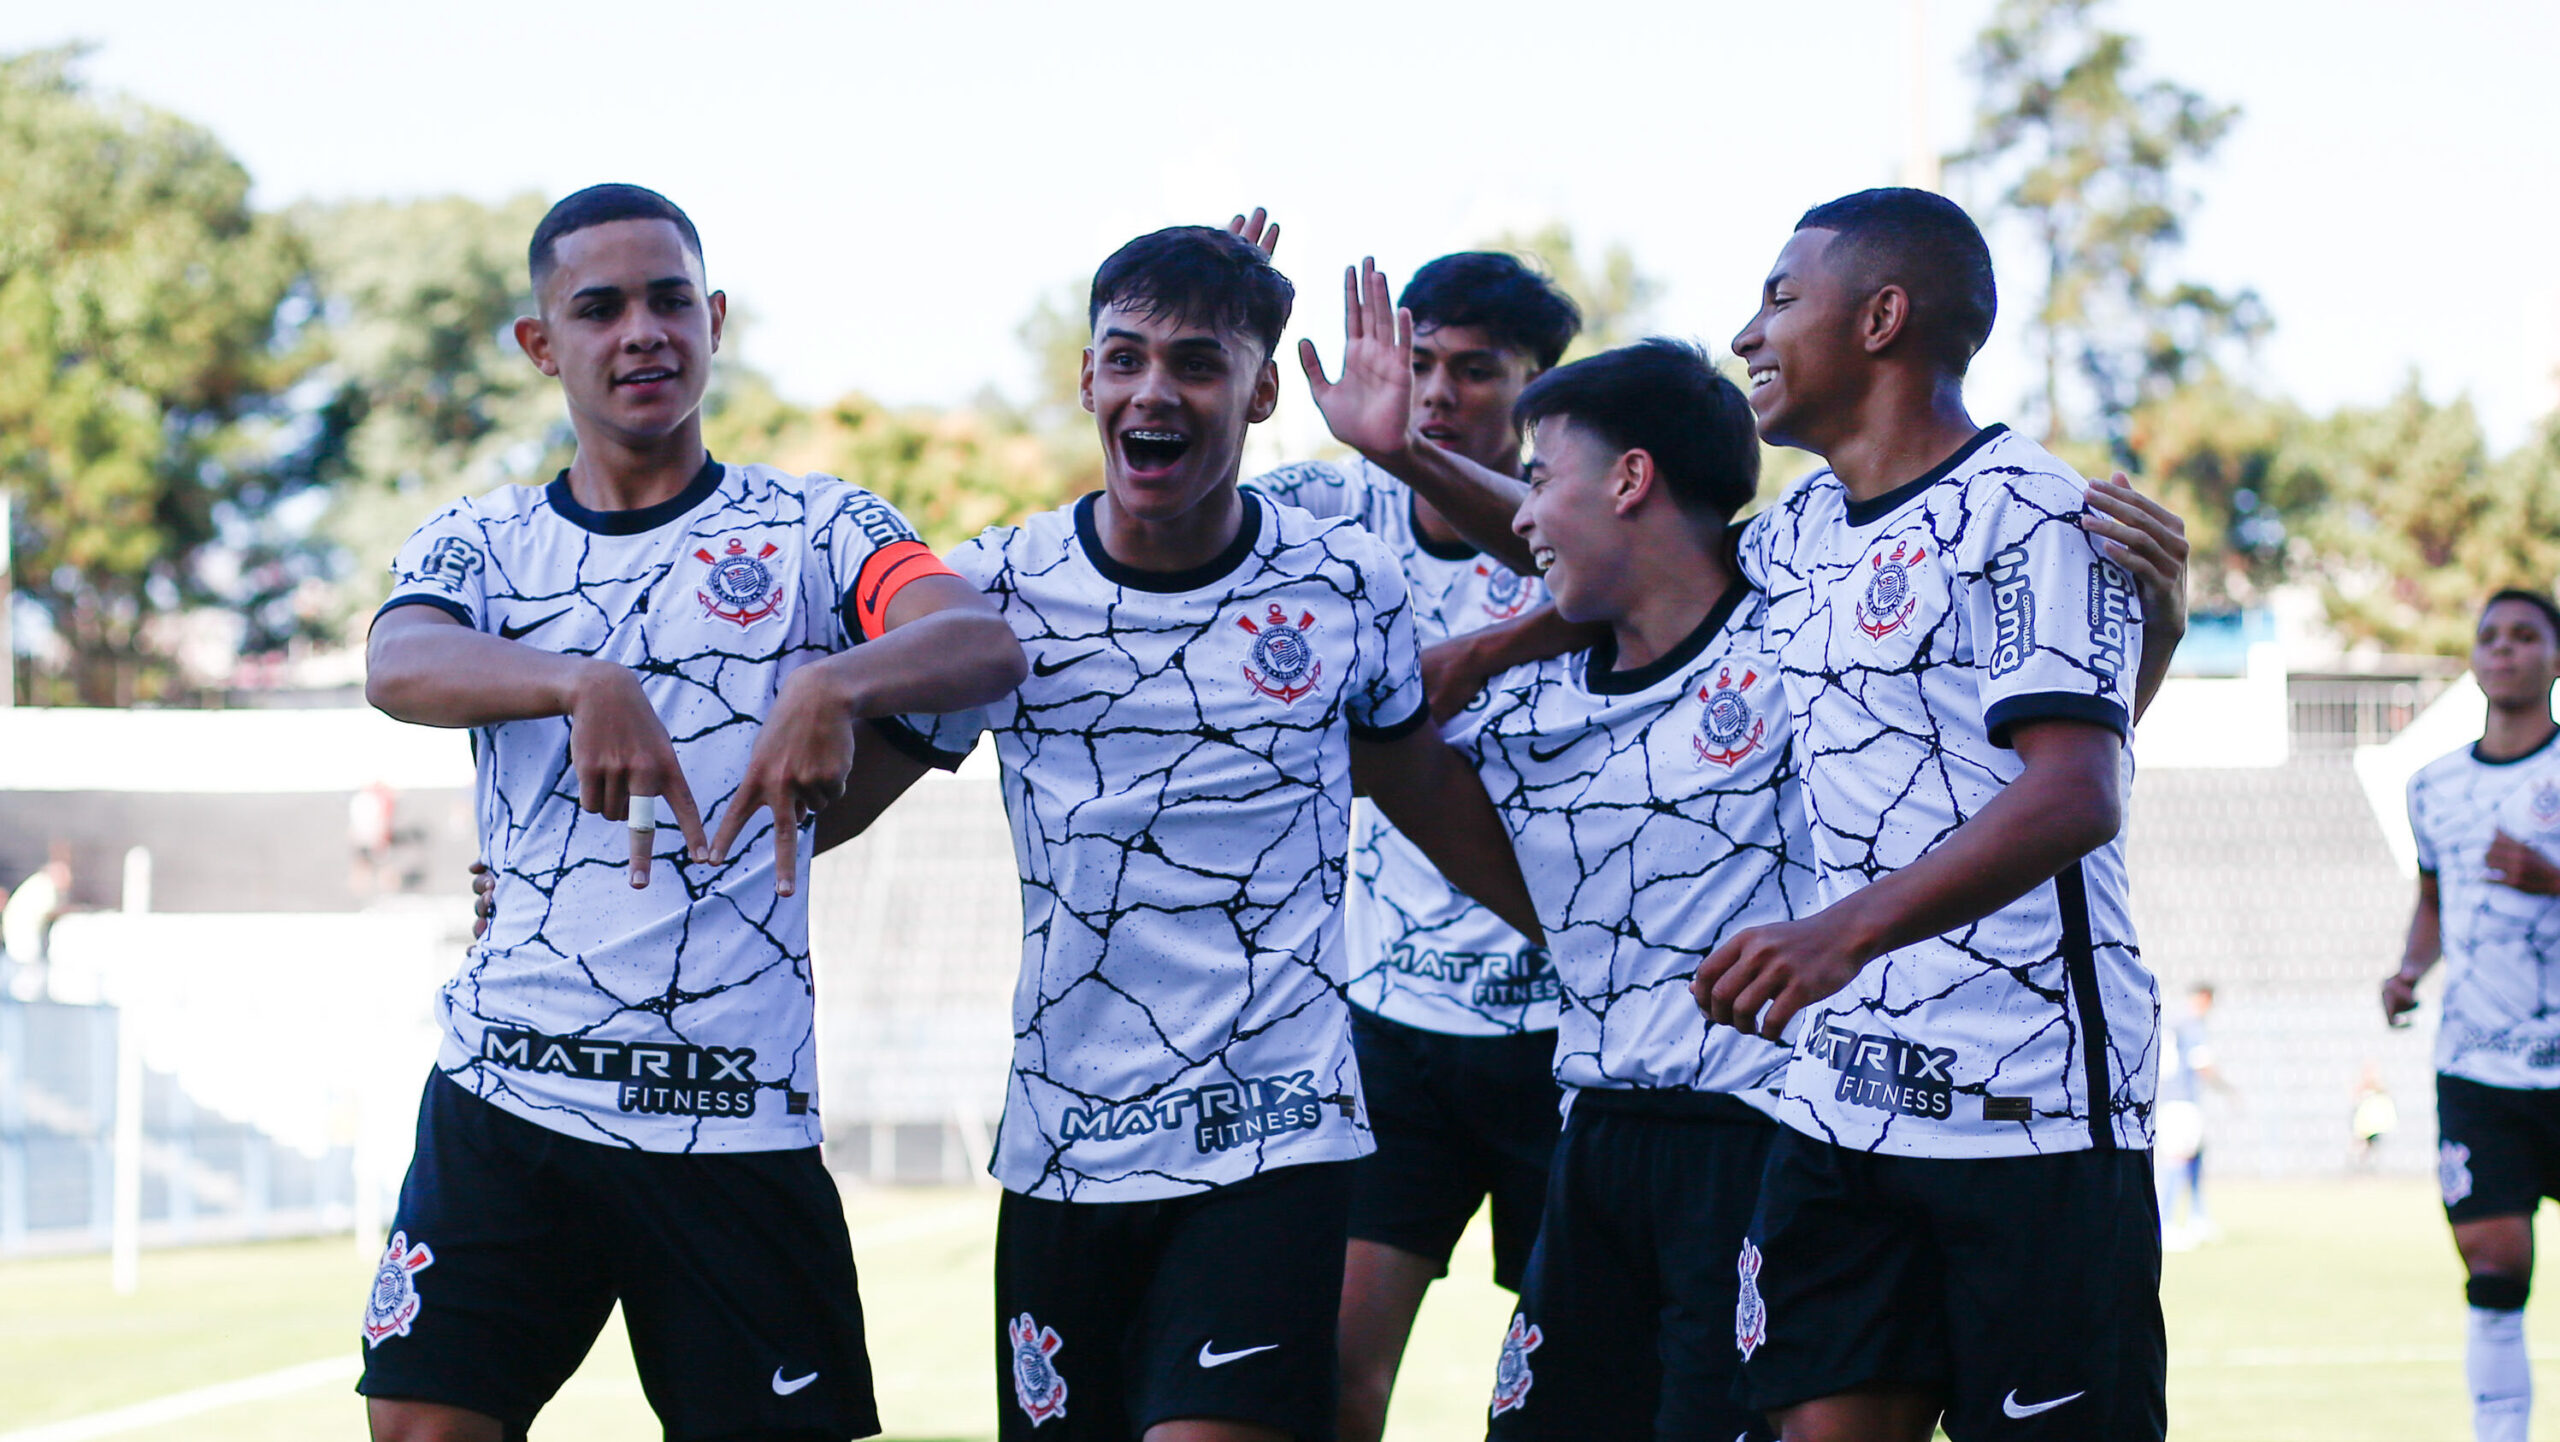 Ídolo do Botafogo, Jefferson reage a empate nas redes sociais